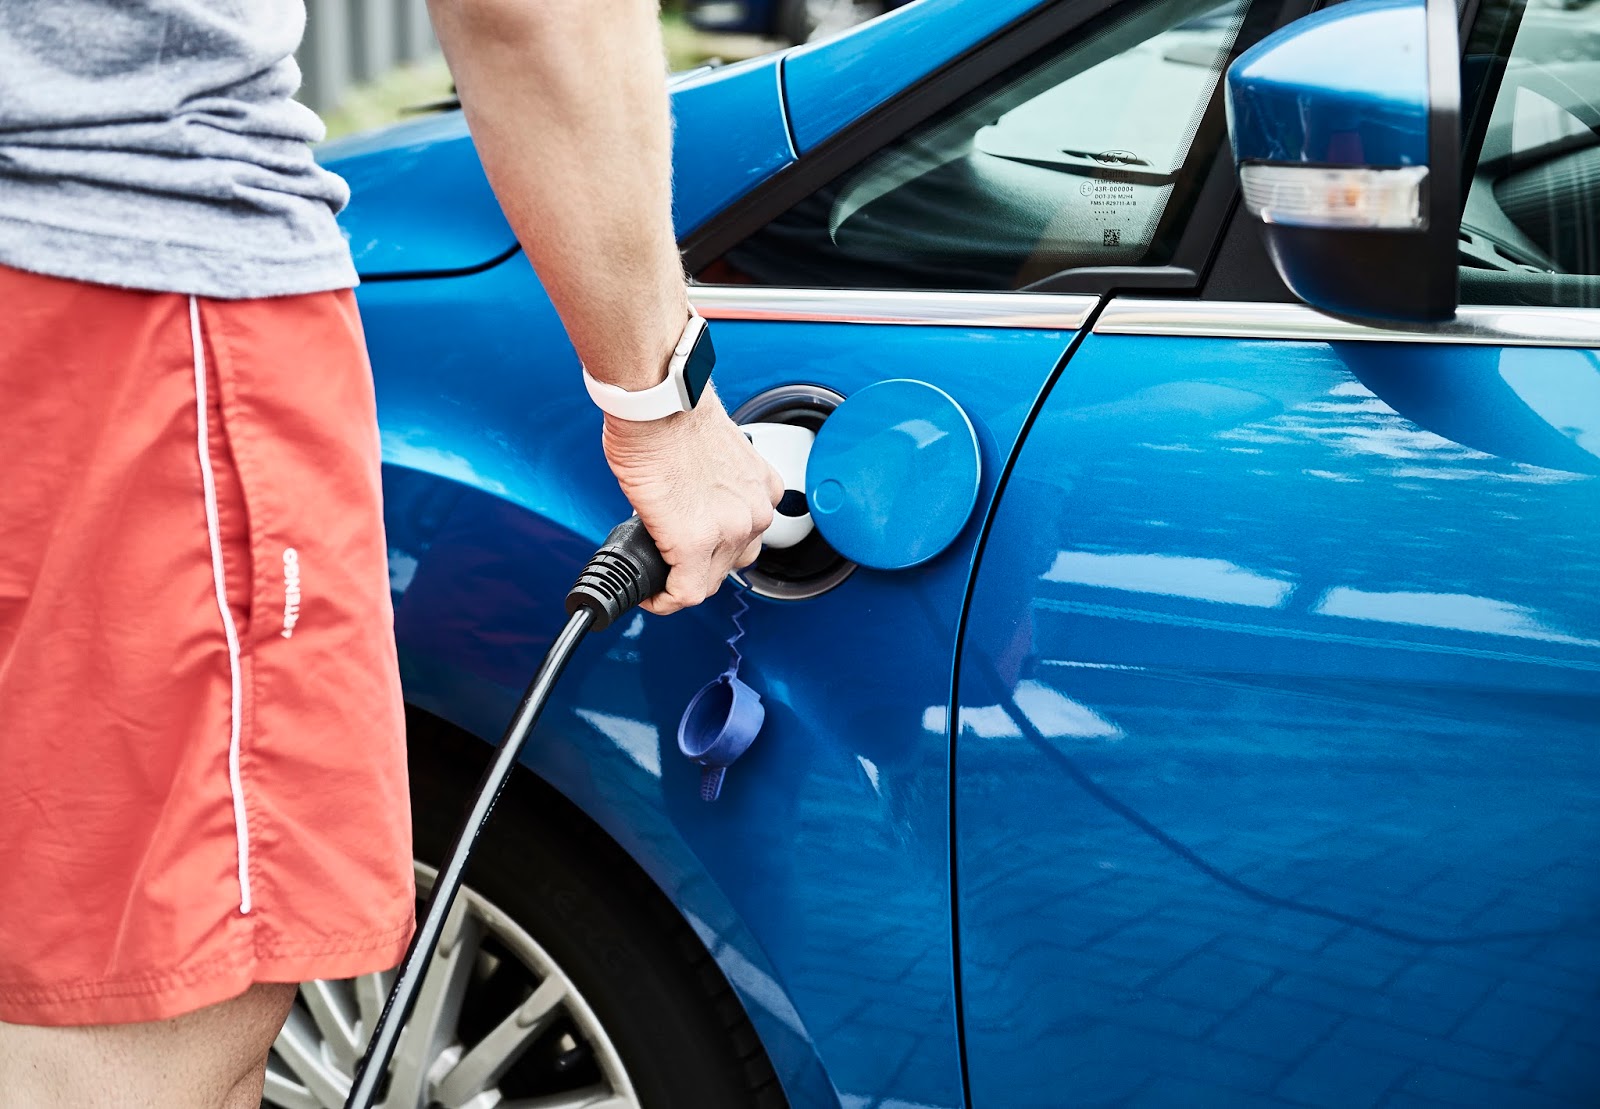 13 MyFordMobile charging Χρησιμοποιείστε το smartwatch σας για να τσεκάρετε το ηλεκτρικό σας αυτοκίνητο Ford